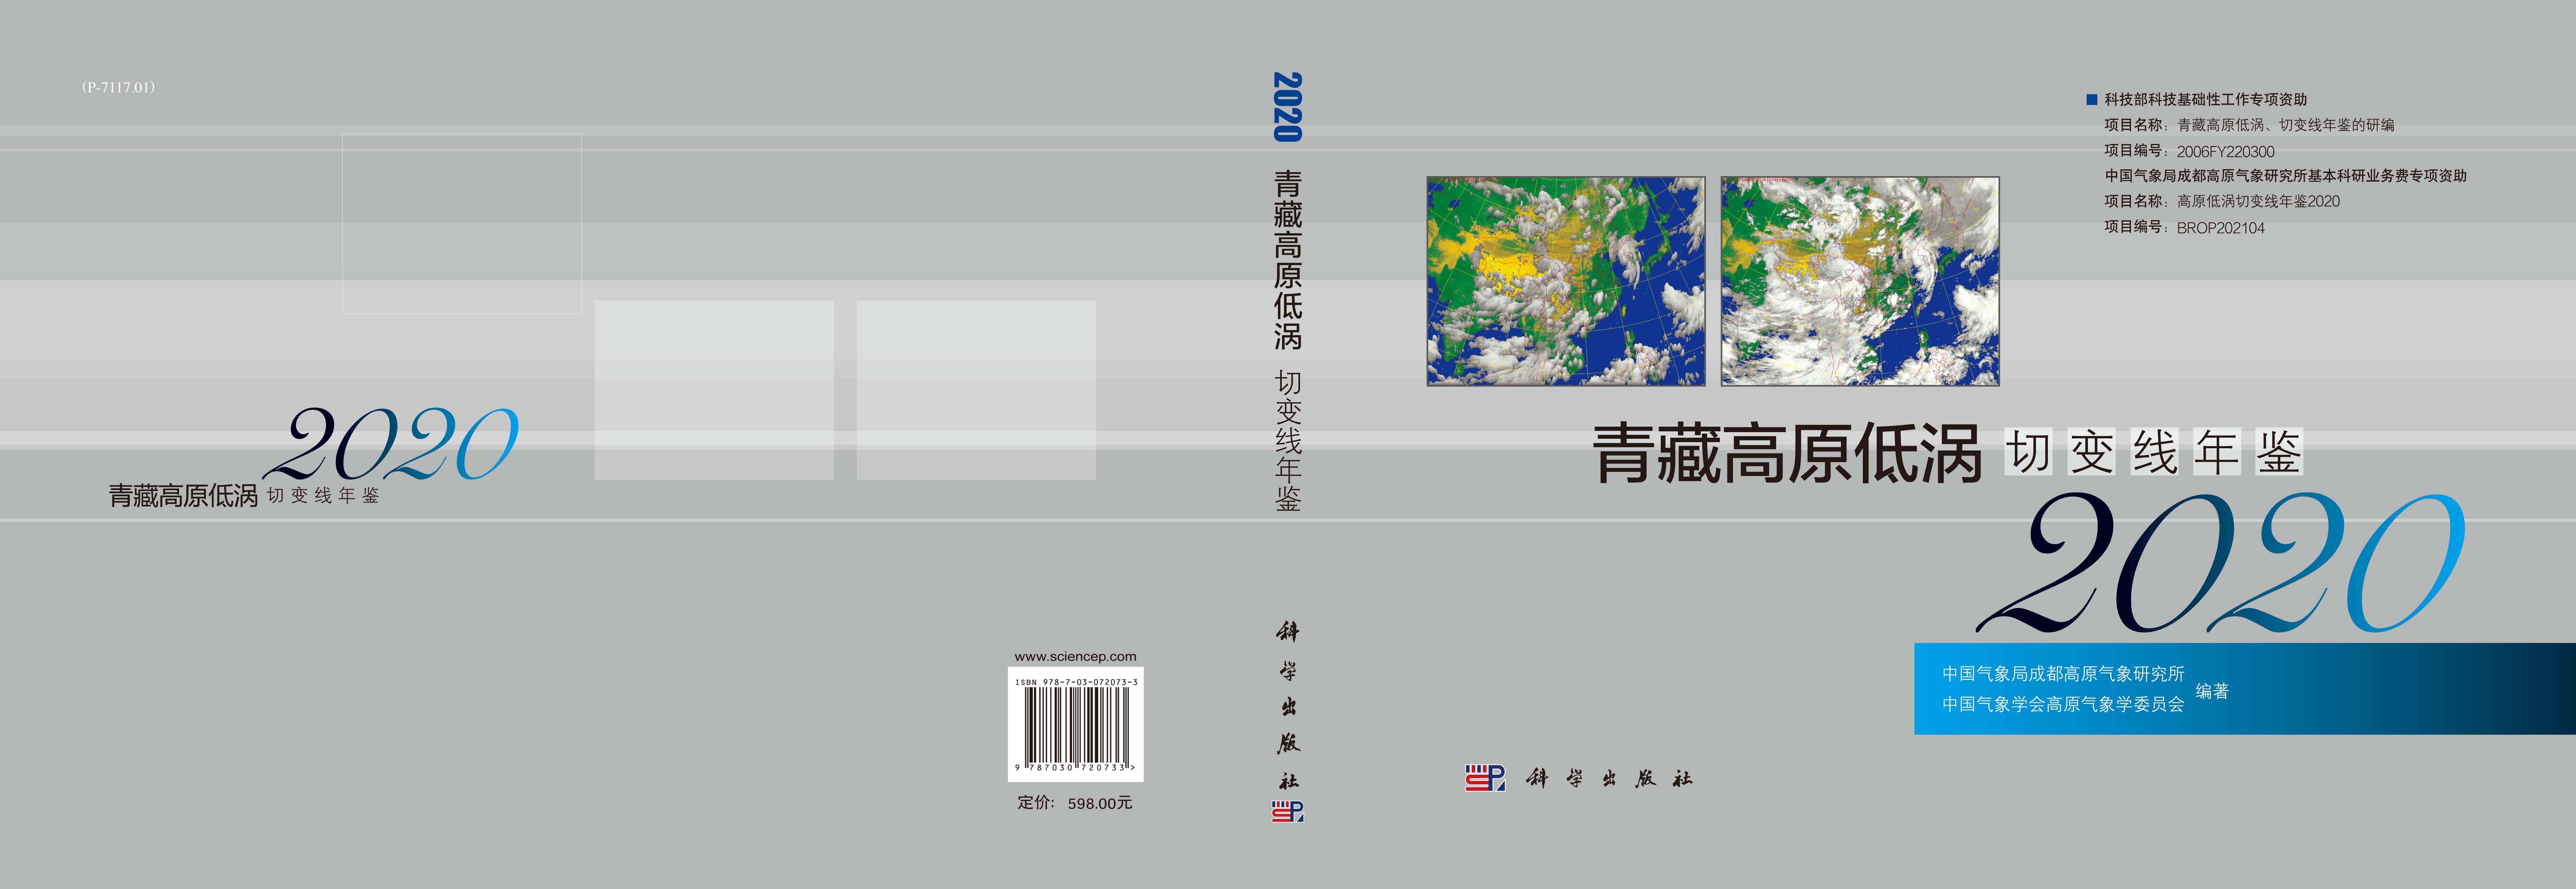 青藏高原低涡切变线年鉴.2020